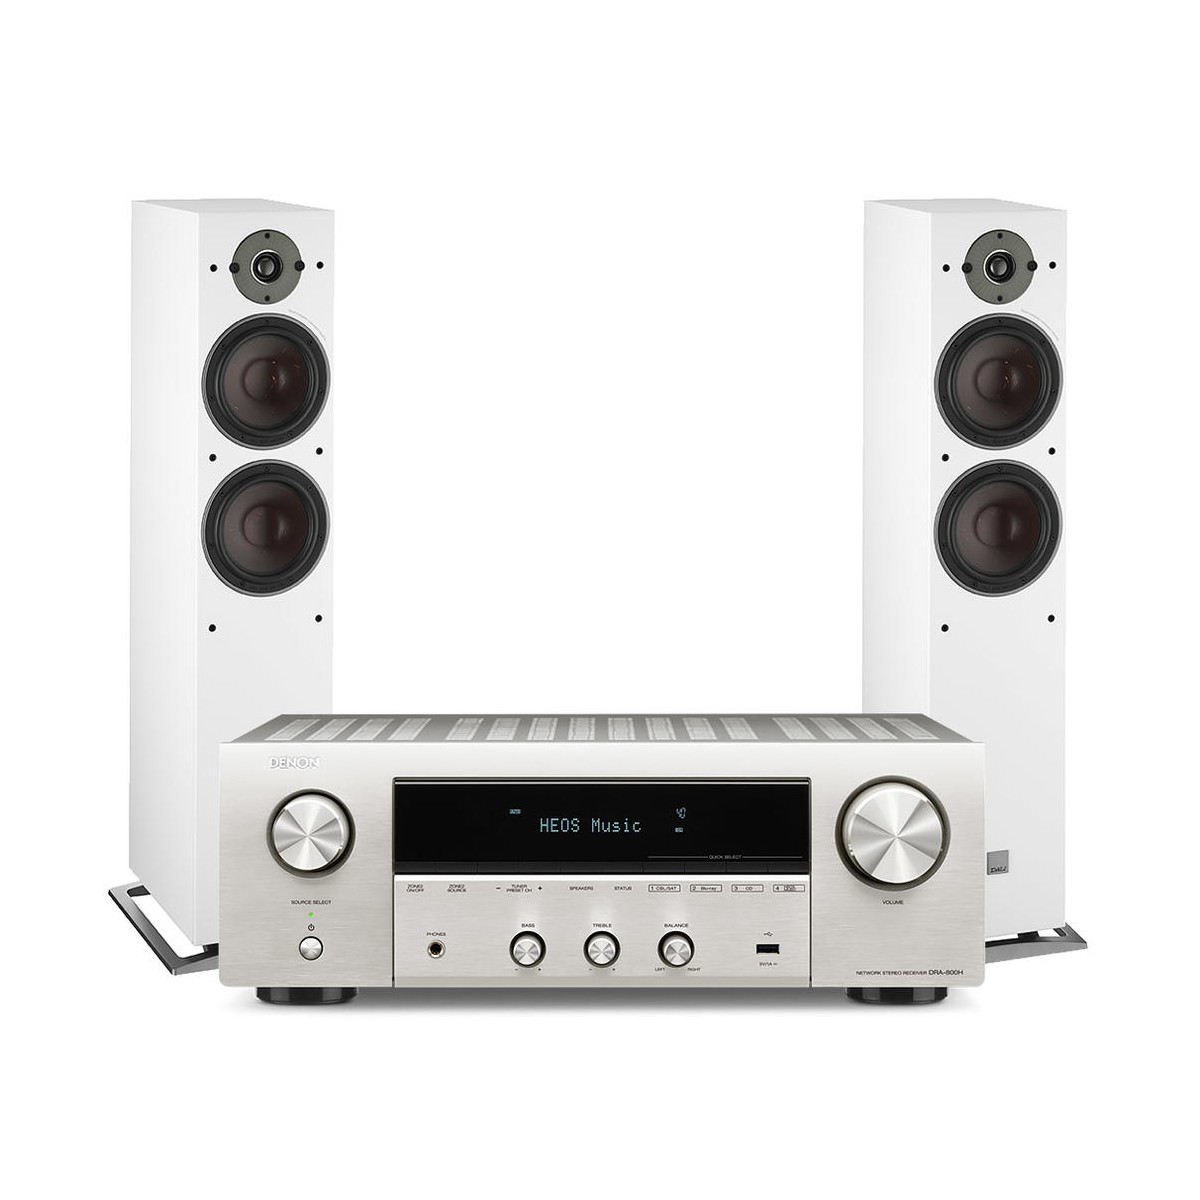 Zestaw stereo: DRA-800H + OBERON 7